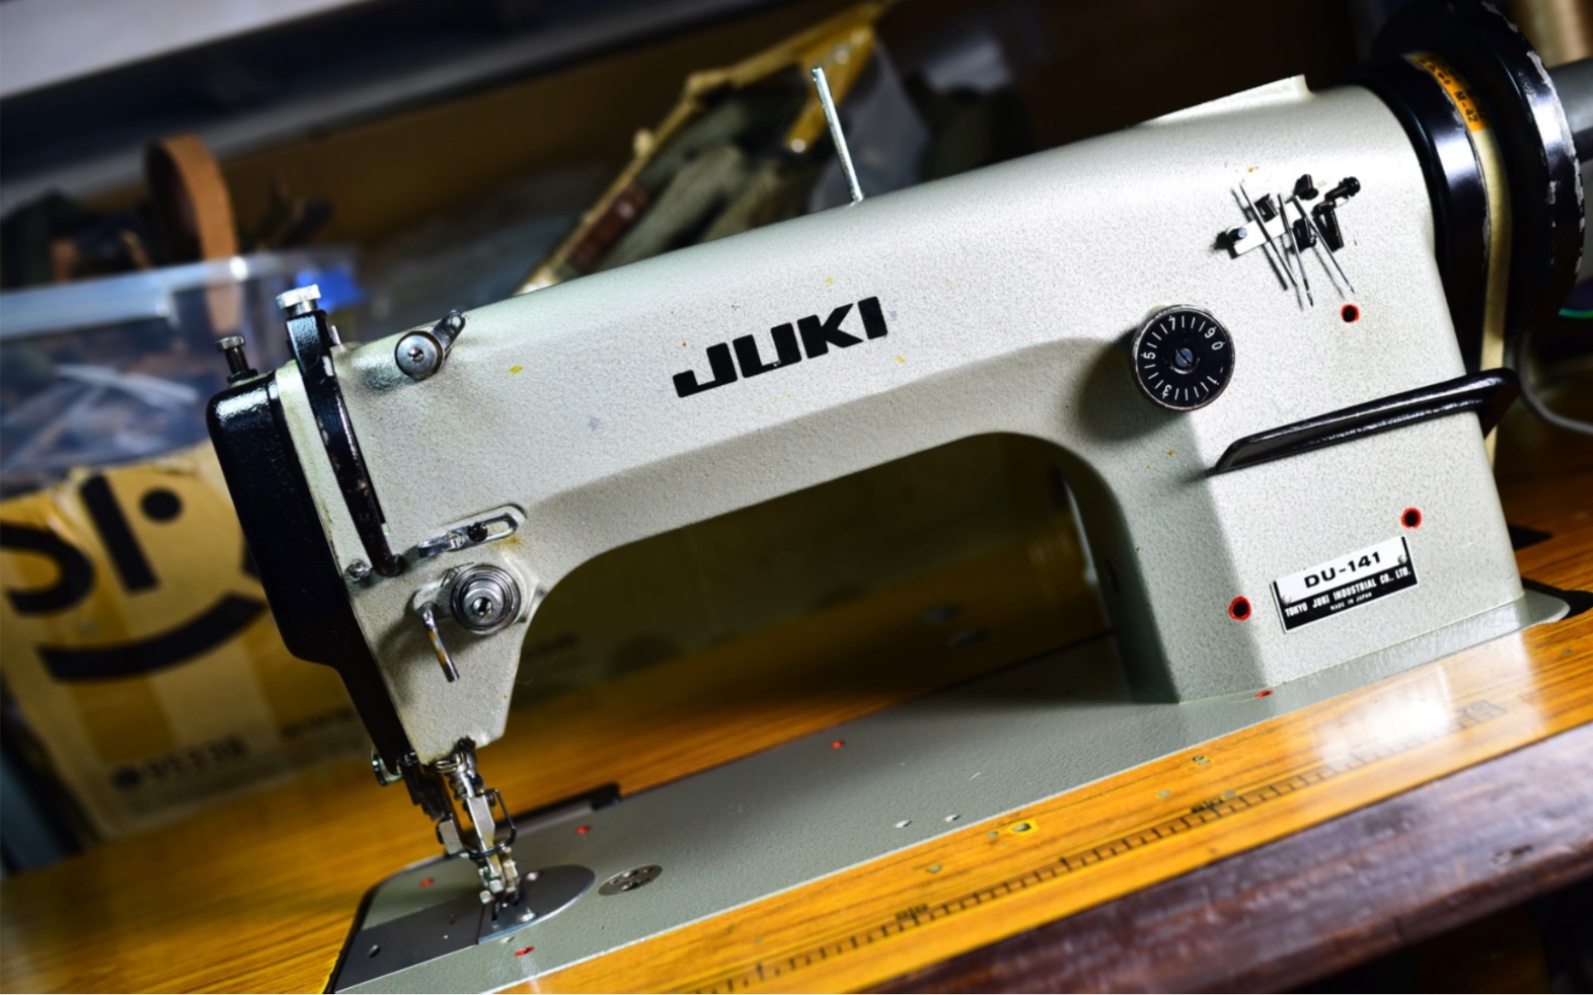 日本进口古董老缝纫机 juki du 141 重机两同步缝纫机 皮革帆布缝纫机